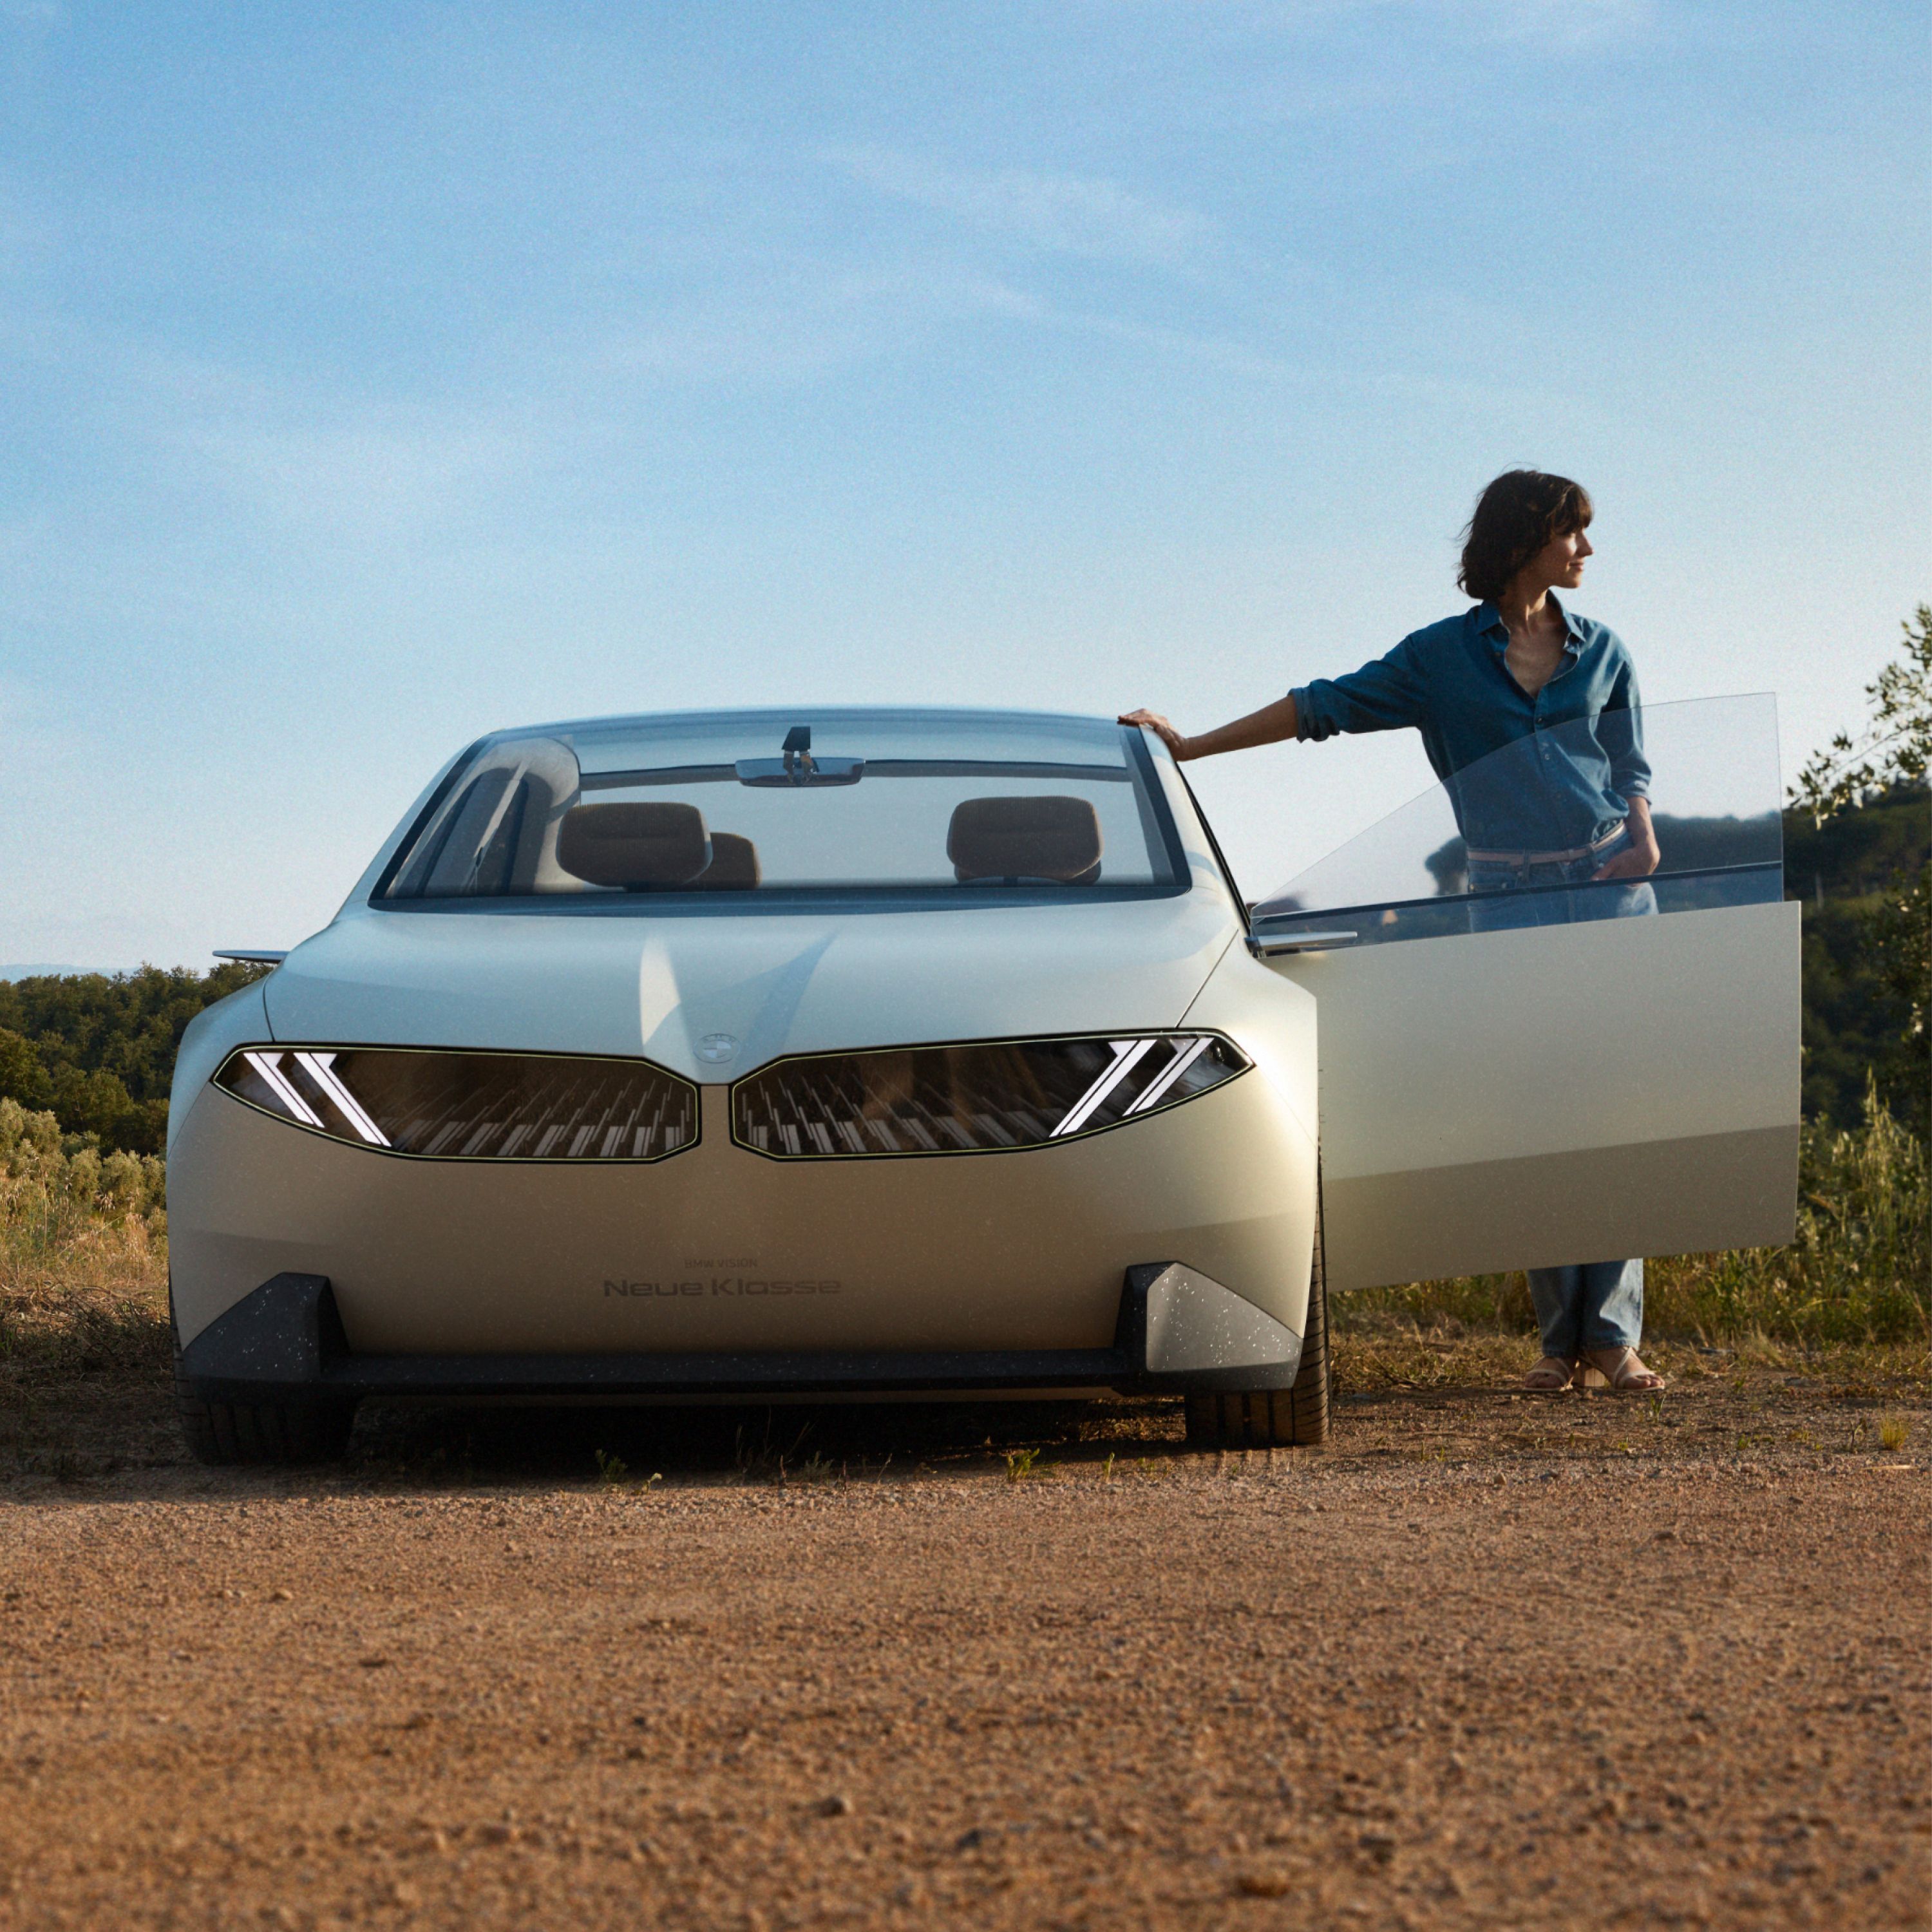 BMW Vision Neue Klasse konseptiauto 2023, ulkopuoli, etunäkymä, pysäköitynä aavikolla, ovi auki, kuvassa nainen